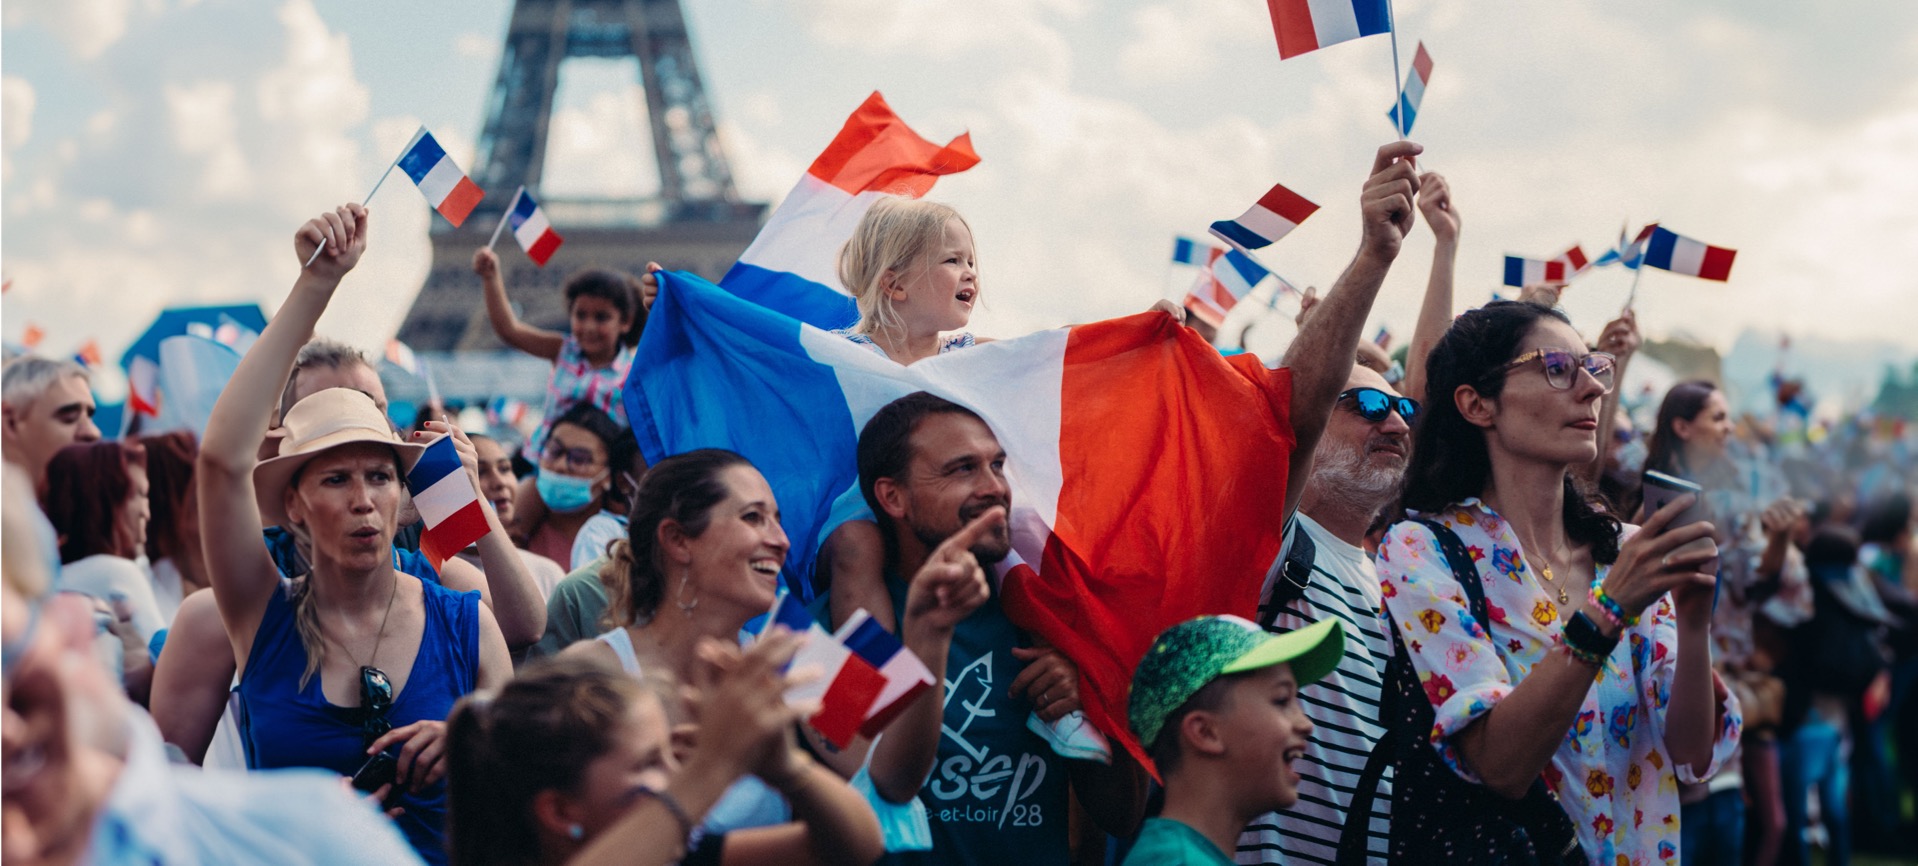 Eine Menge jubelnder Fans, ein Mädchen auf den Schultern ihres Vaters mit vielen wehenden Frankreichfahnen, der Eiffelturm im Hintergrund